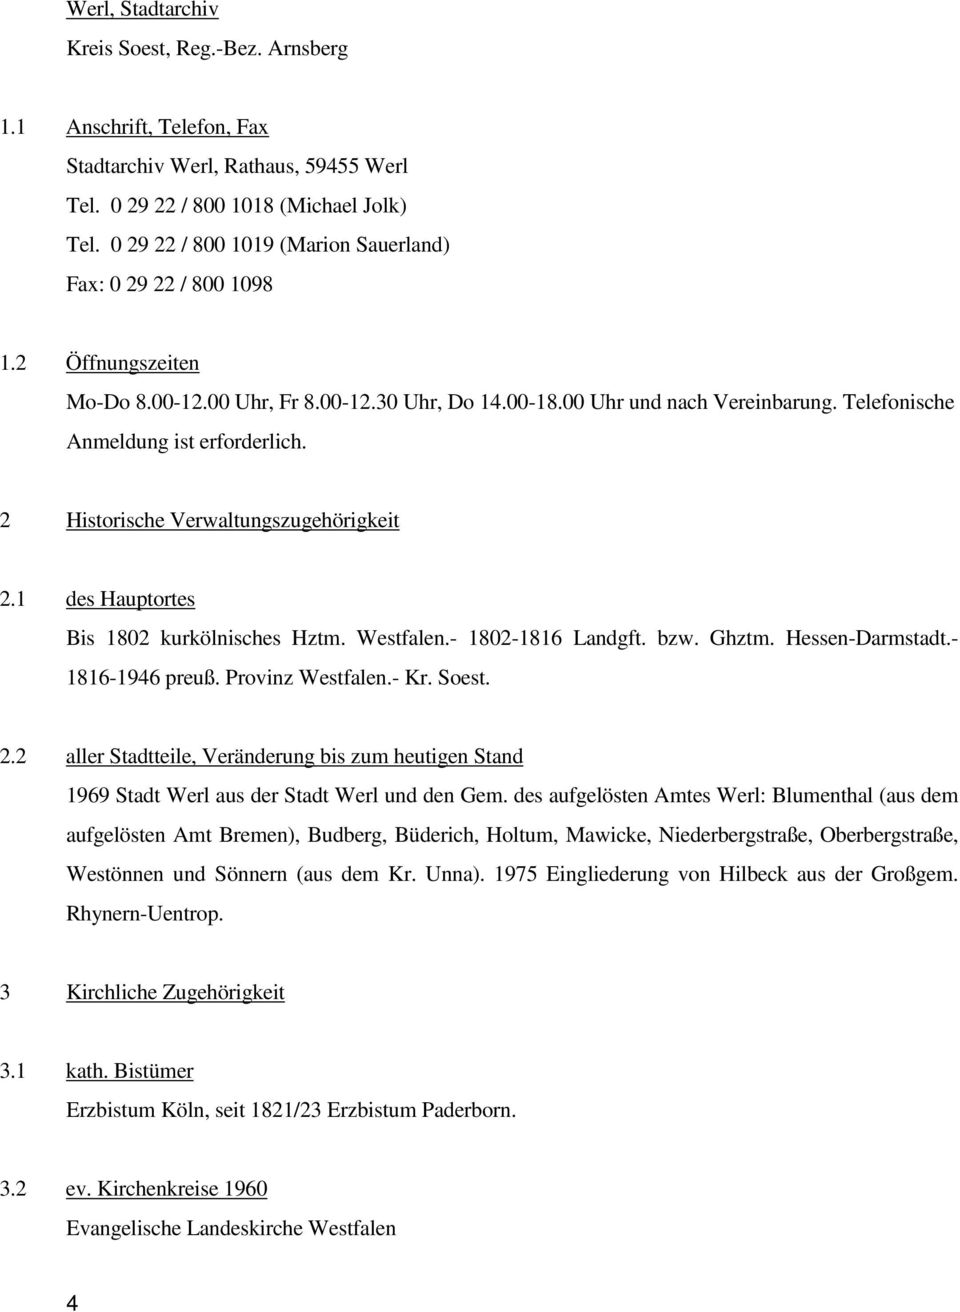 Telefonische Anmeldung ist erforderlich. 2 Historische Verwaltungszugehörigkeit 2.1 des Hauptortes Bis 1802 kurkölnisches Hztm. Westfalen.- 1802-1816 Landgft. bzw. Ghztm. Hessen-Darmstadt.